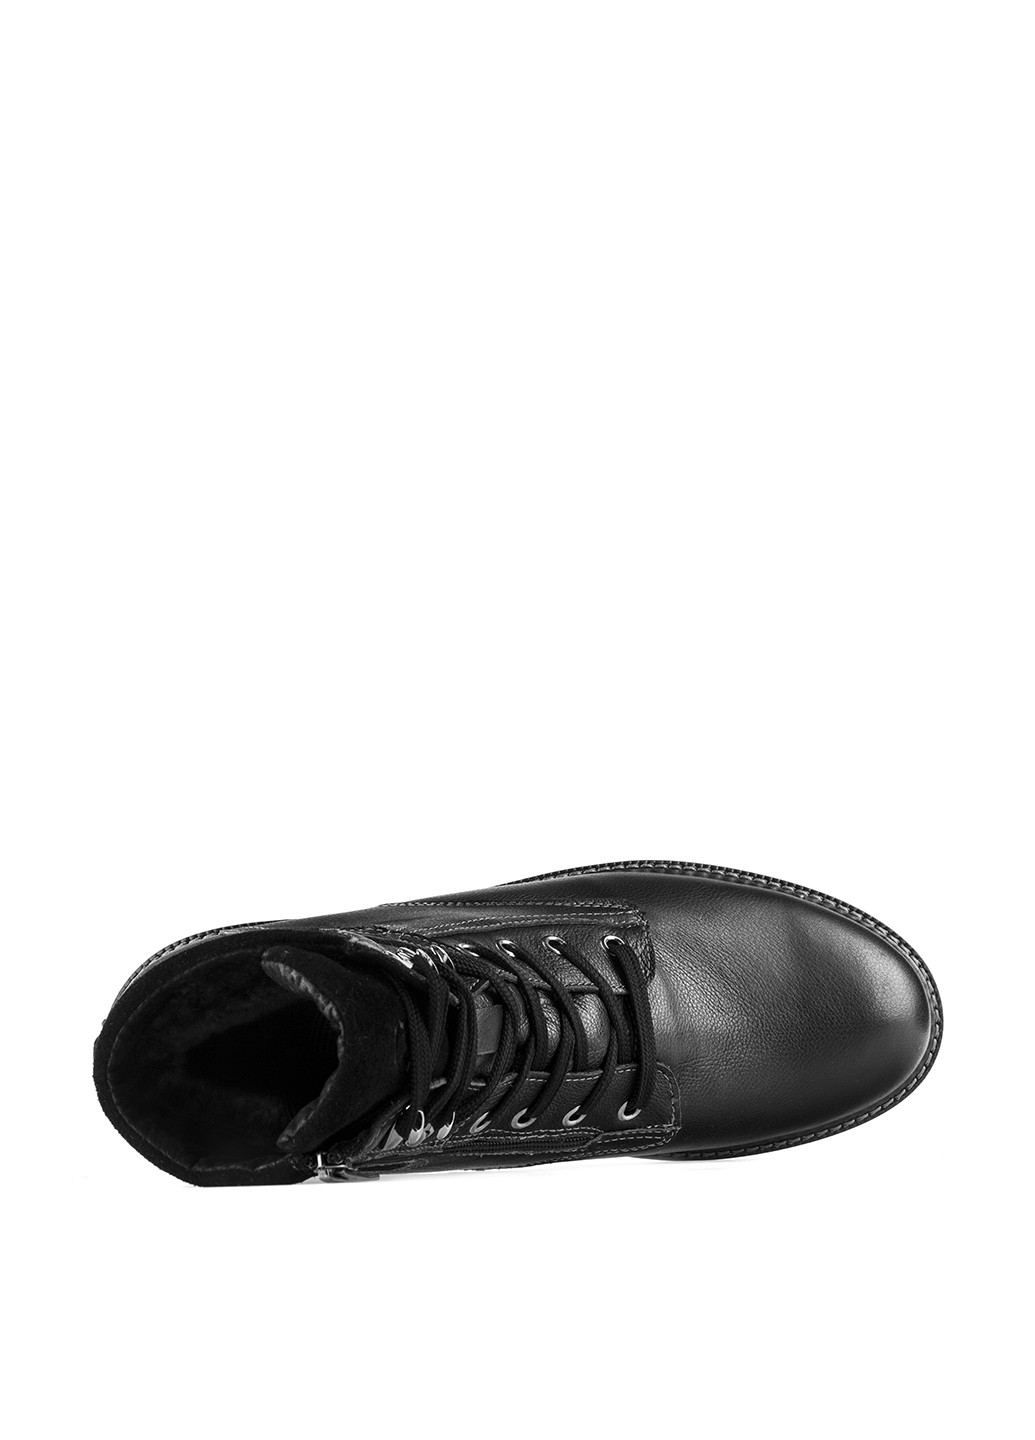 Черные зимние ботинки Westland